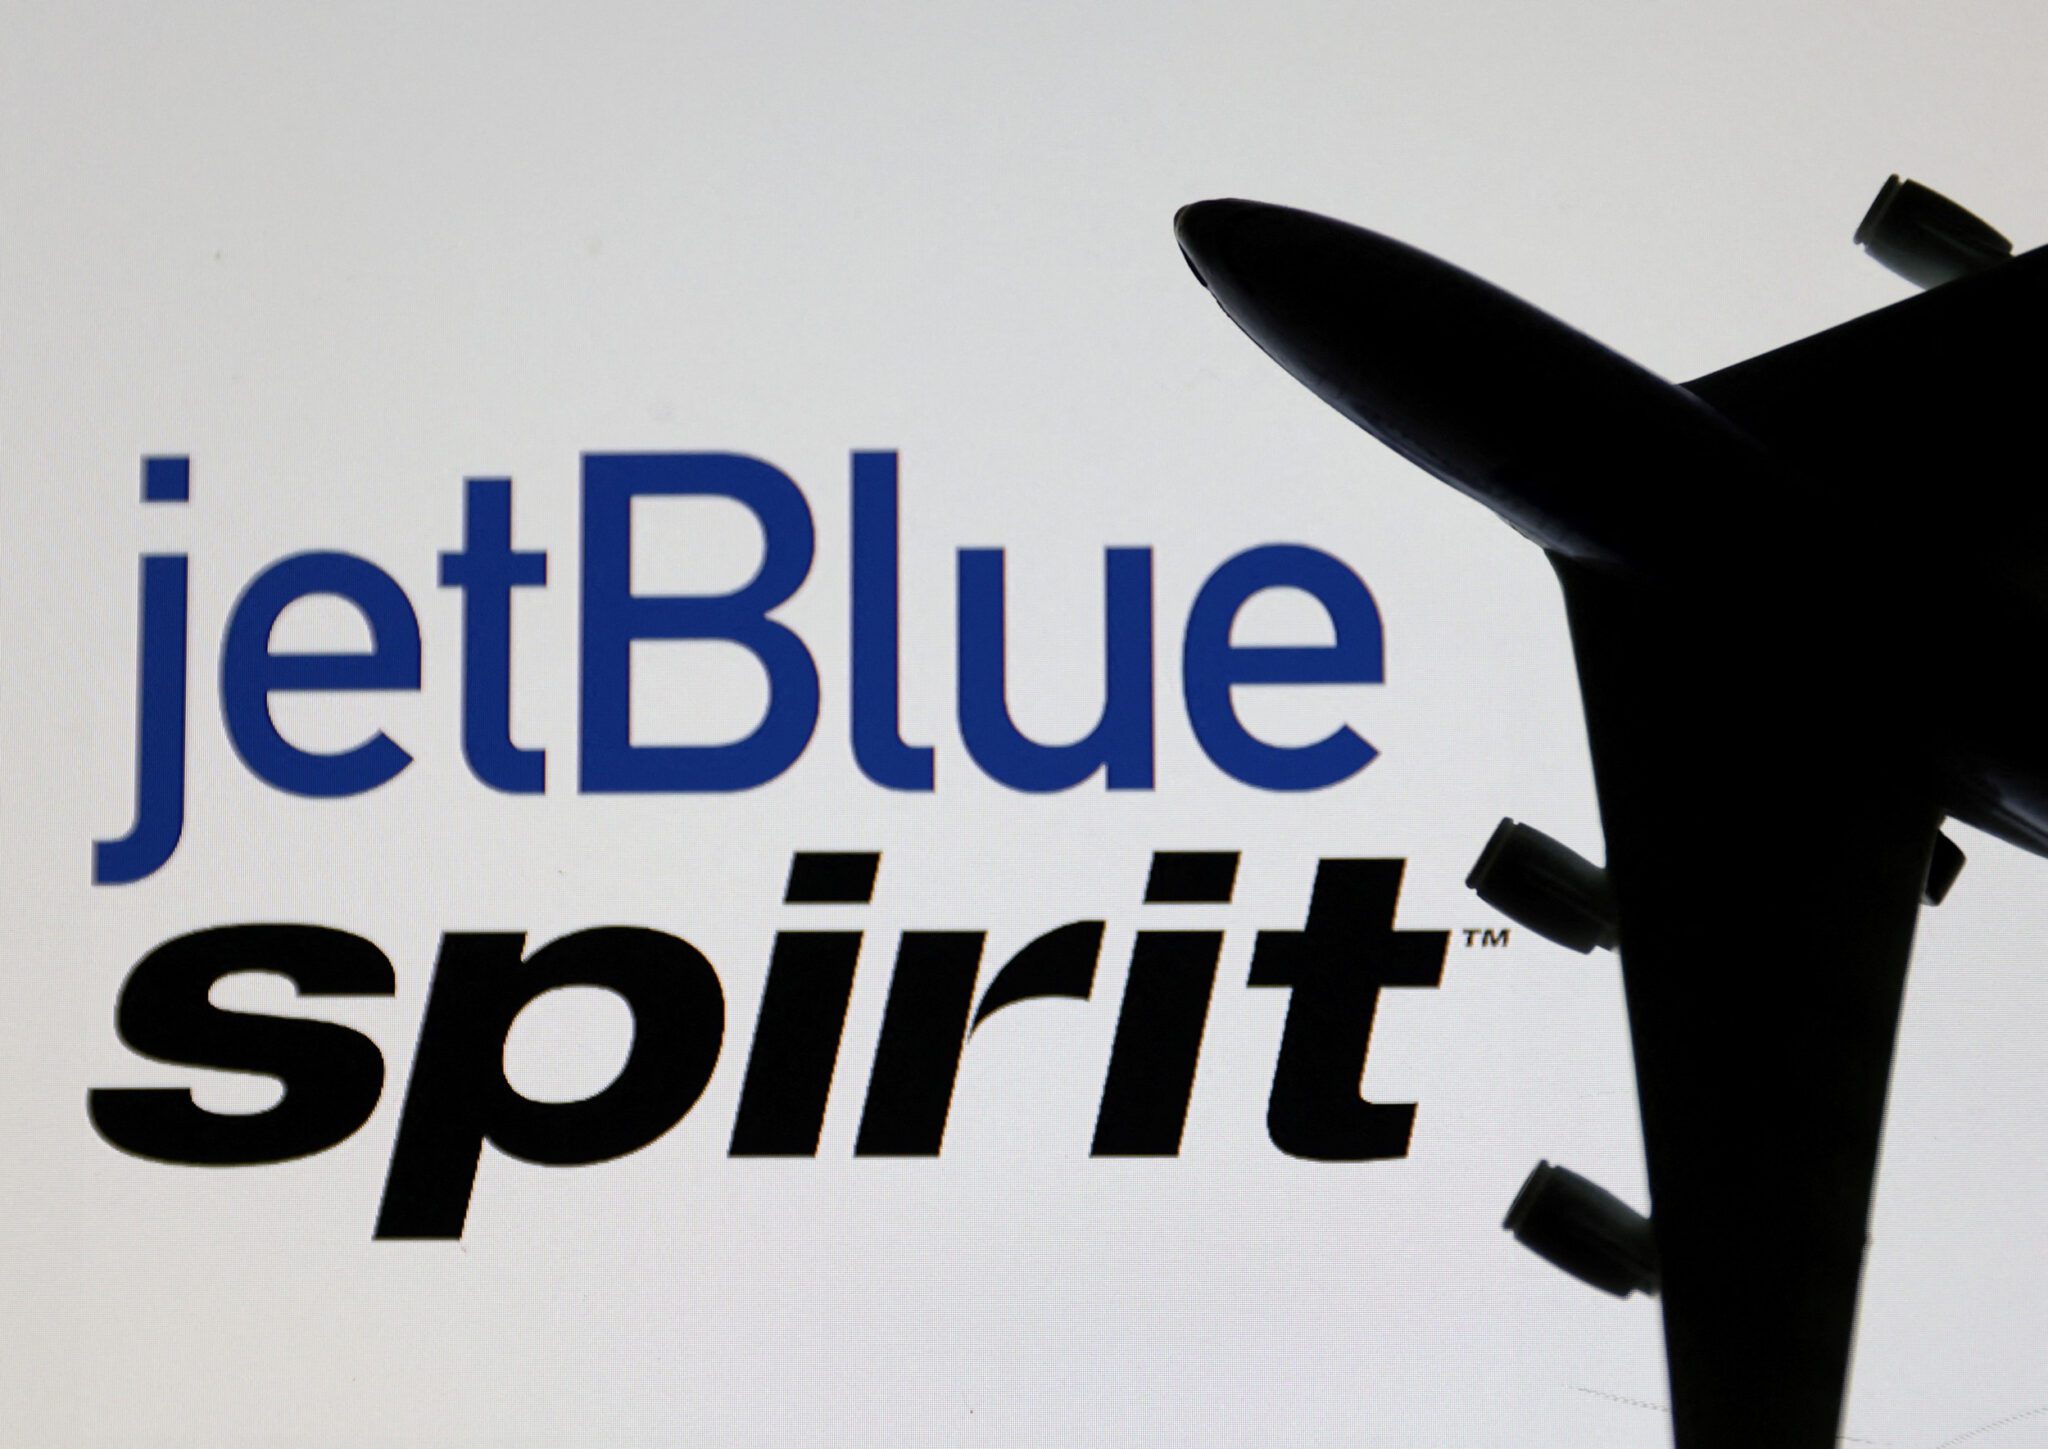 Amerikaans proces tegen fusie tussen JetBlue en Spirit gaat van start